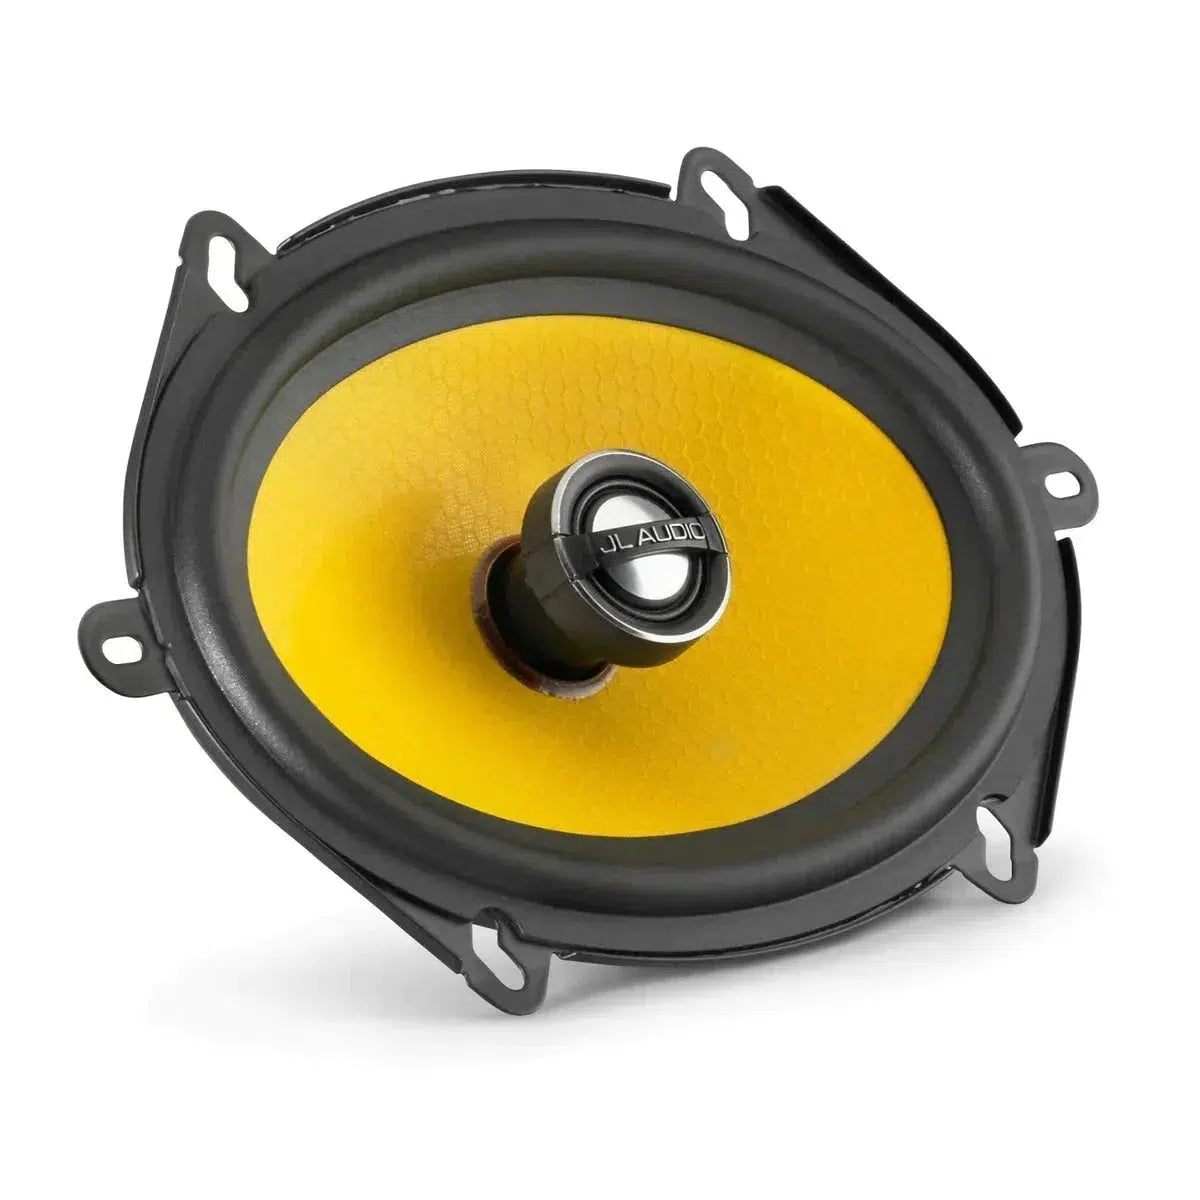 JL Audio-C1-570X-5 "x7" Coaxial Loudspeaker-Masori.de